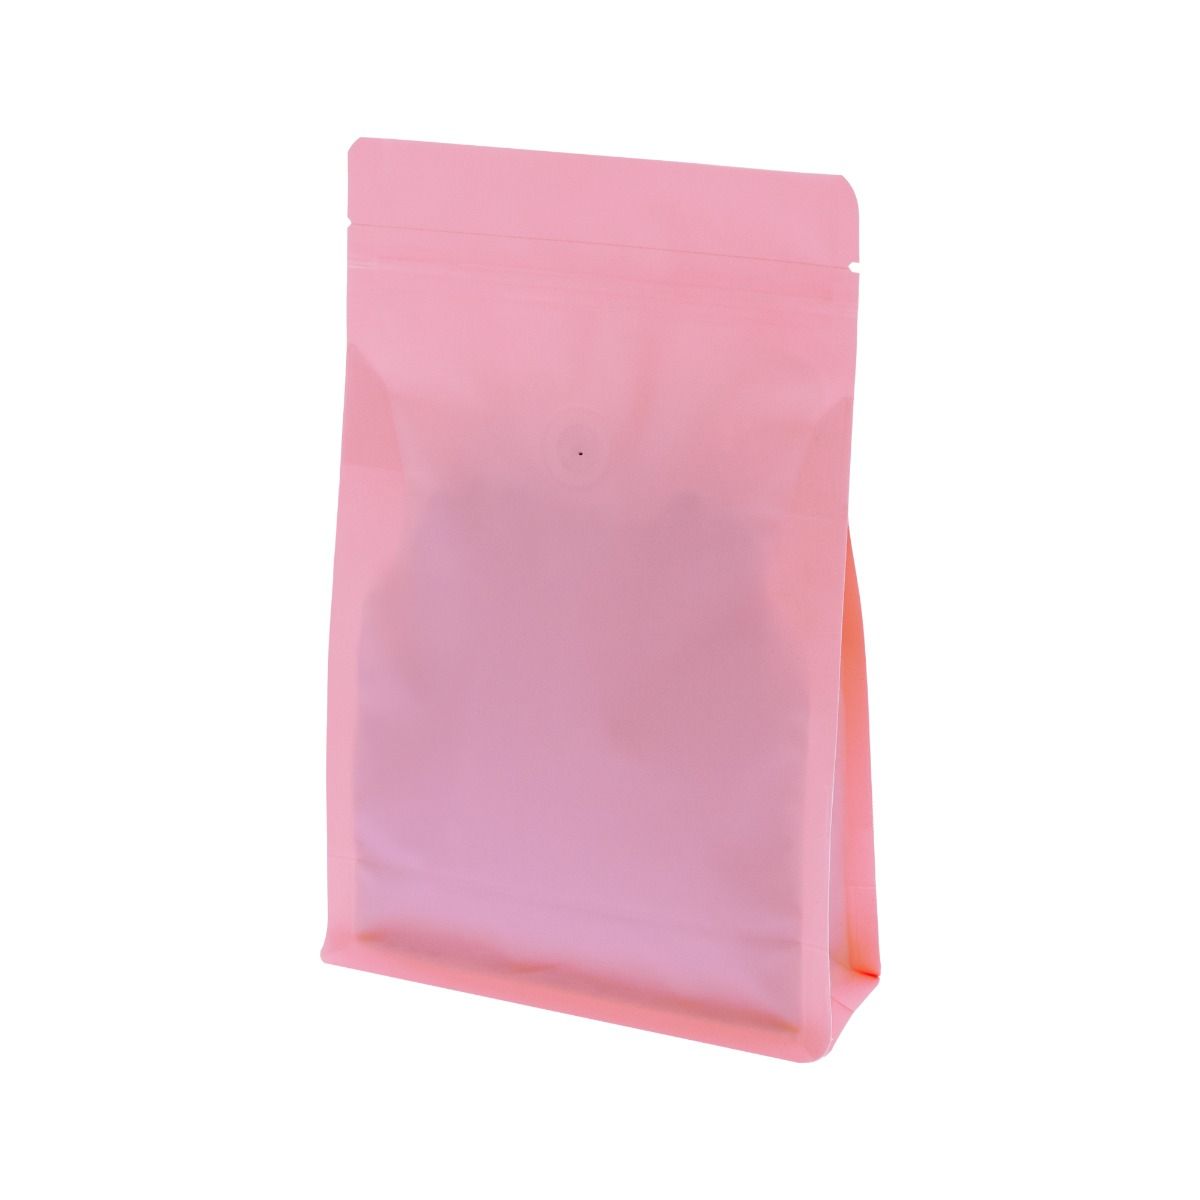 Flat bottom koffiezak met zipper - mat roze (100% recyclebaar)